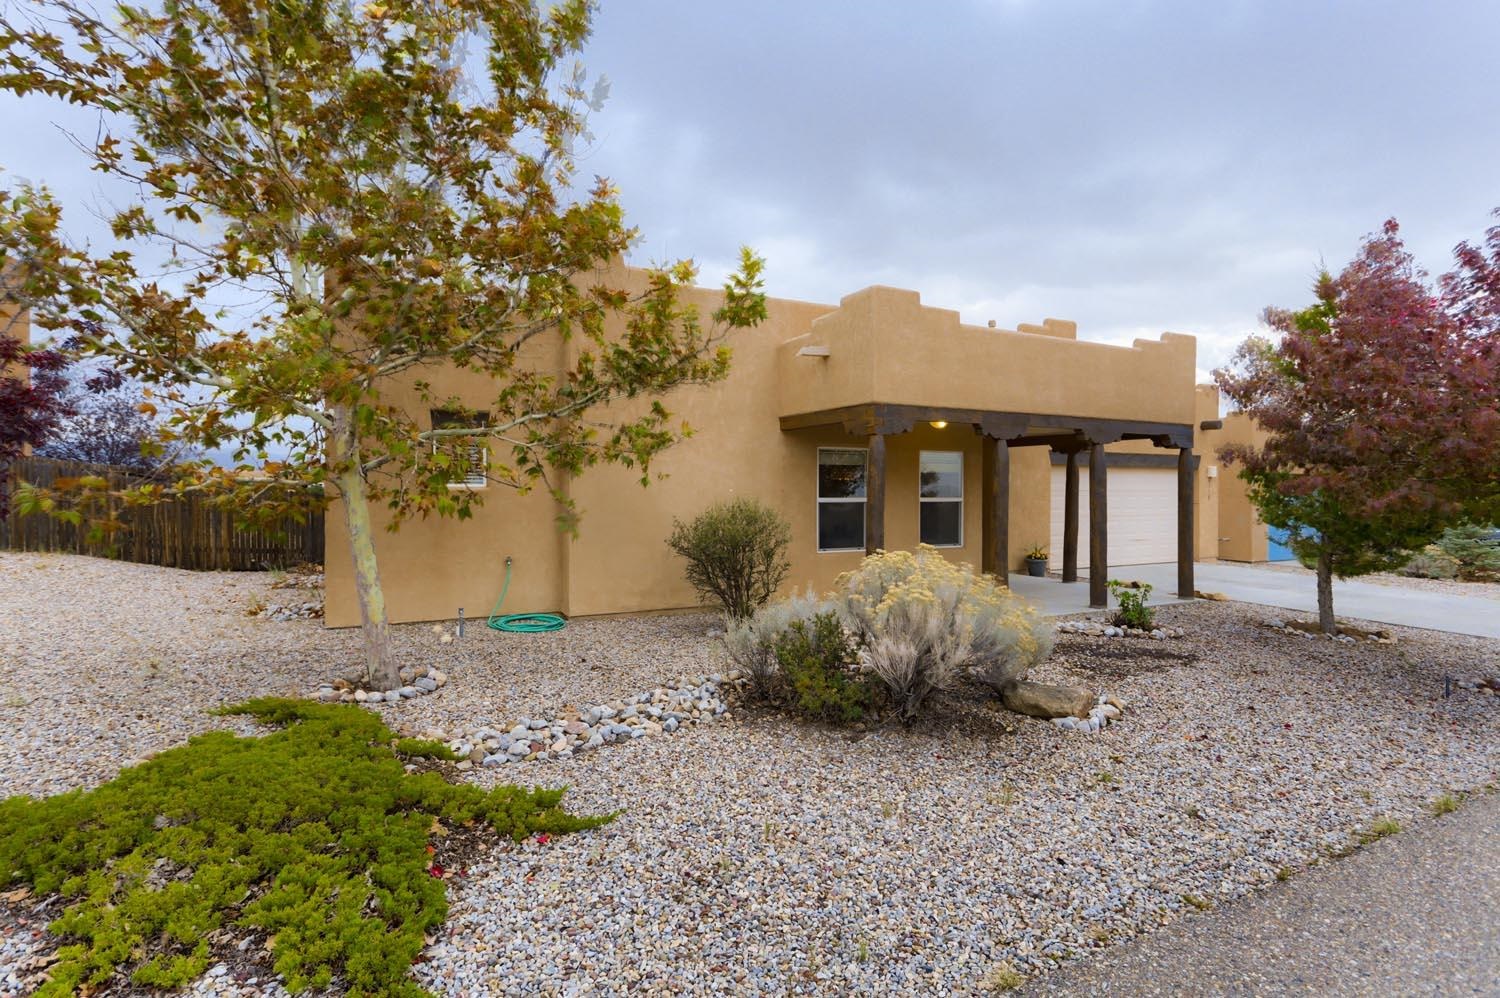 4715 Contenta, Santa Fe, New Mexico 87507, 3 Bedrooms Bedrooms, ,2 BathroomsBathrooms,Residential,For Sale,4715 Contenta,202104559